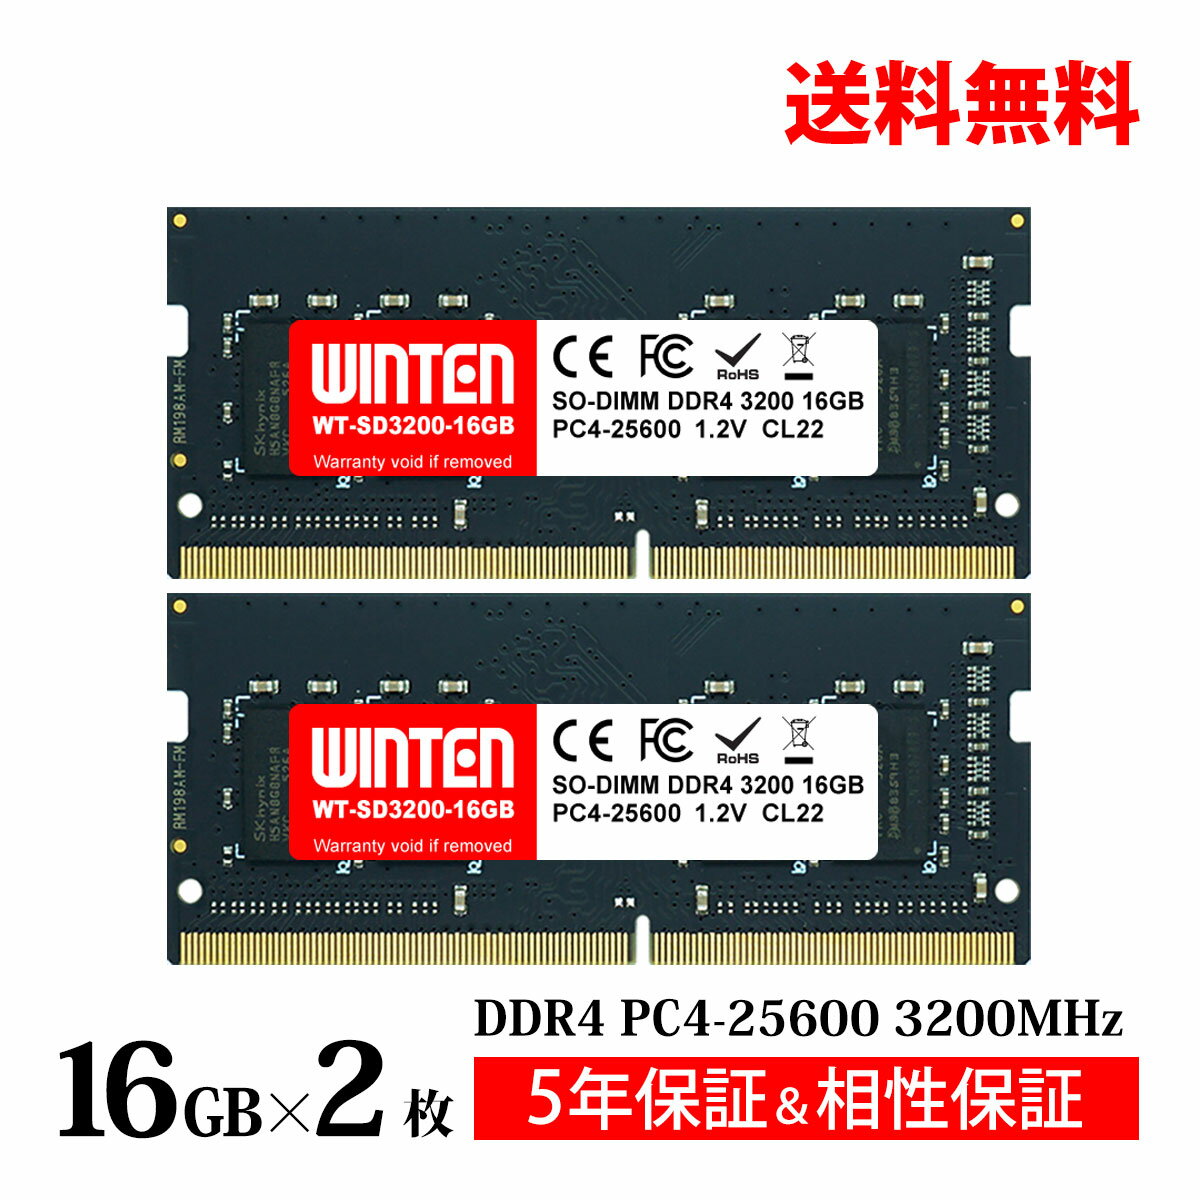 ノートPC用 メモリ 32GB(16GB×2枚) PC4-25600(DDR4 3200) WT-SD3200-D32GB【相性保証 製品5年保証 送料無料 即日出荷】DDR4 SDRAM SO-DIMM Dual 内蔵メモリー 増設メモリー 5642 1